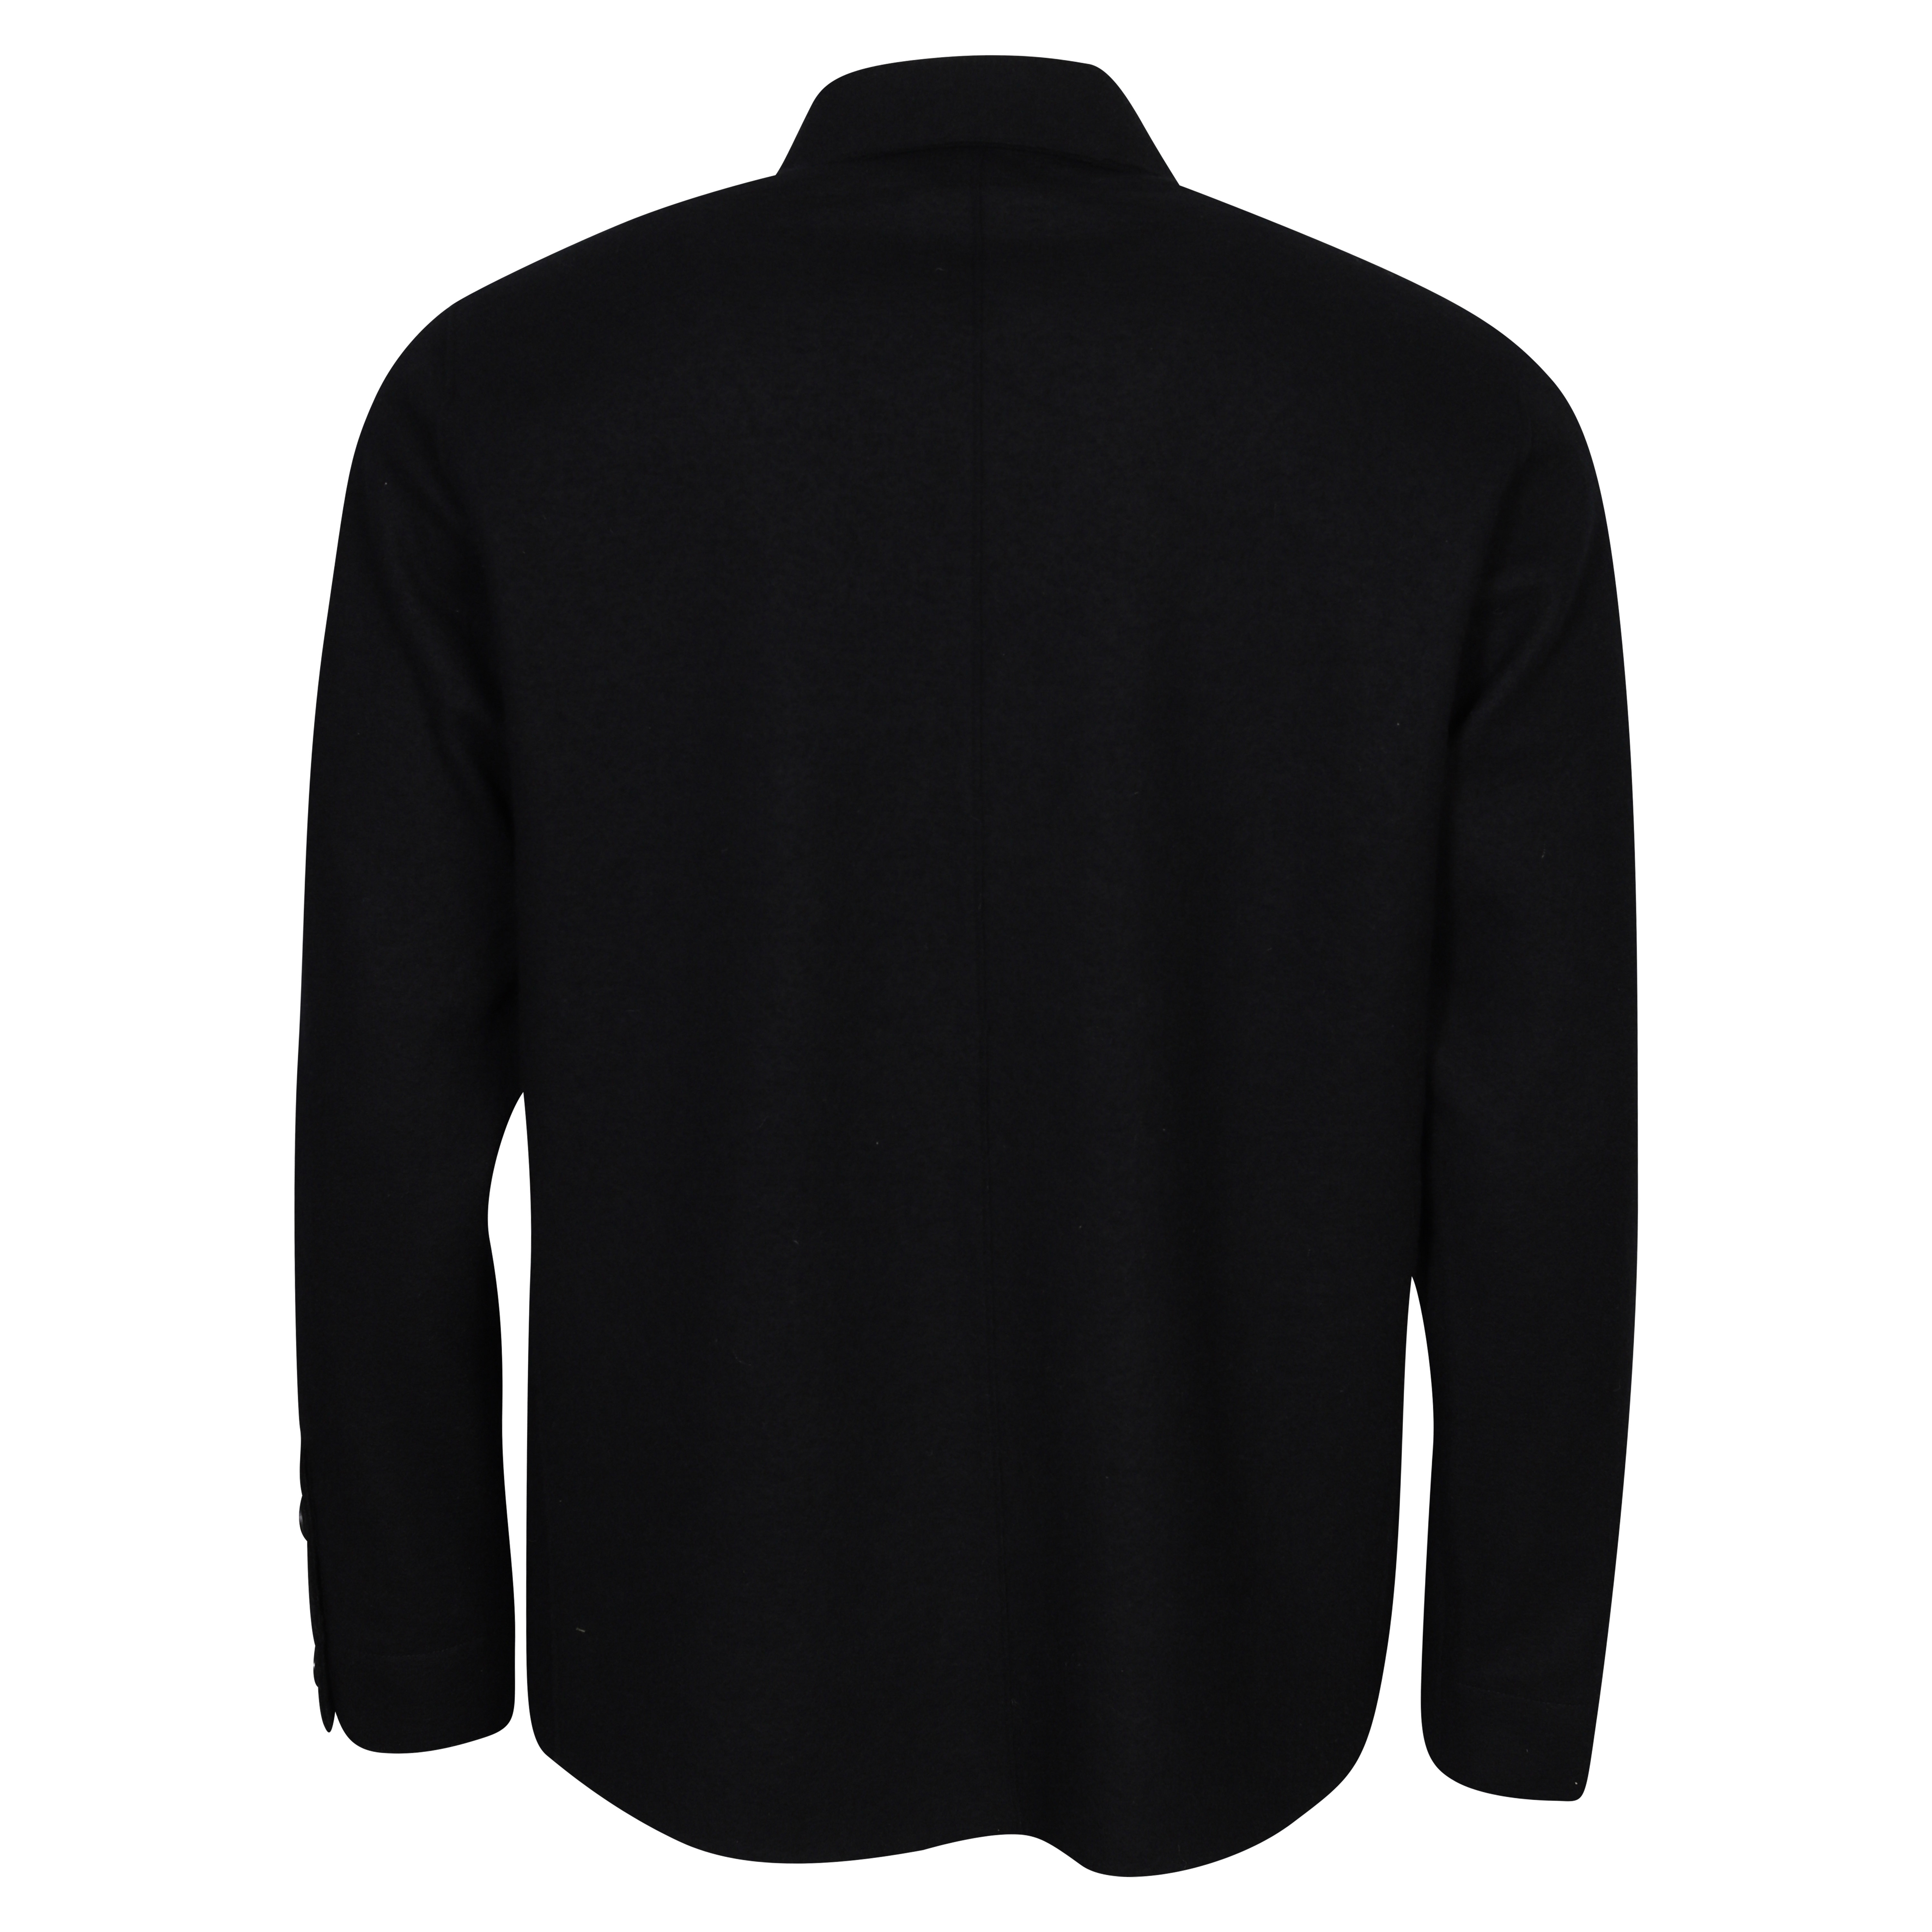 Transit Uomo Wool Overshirt in Black